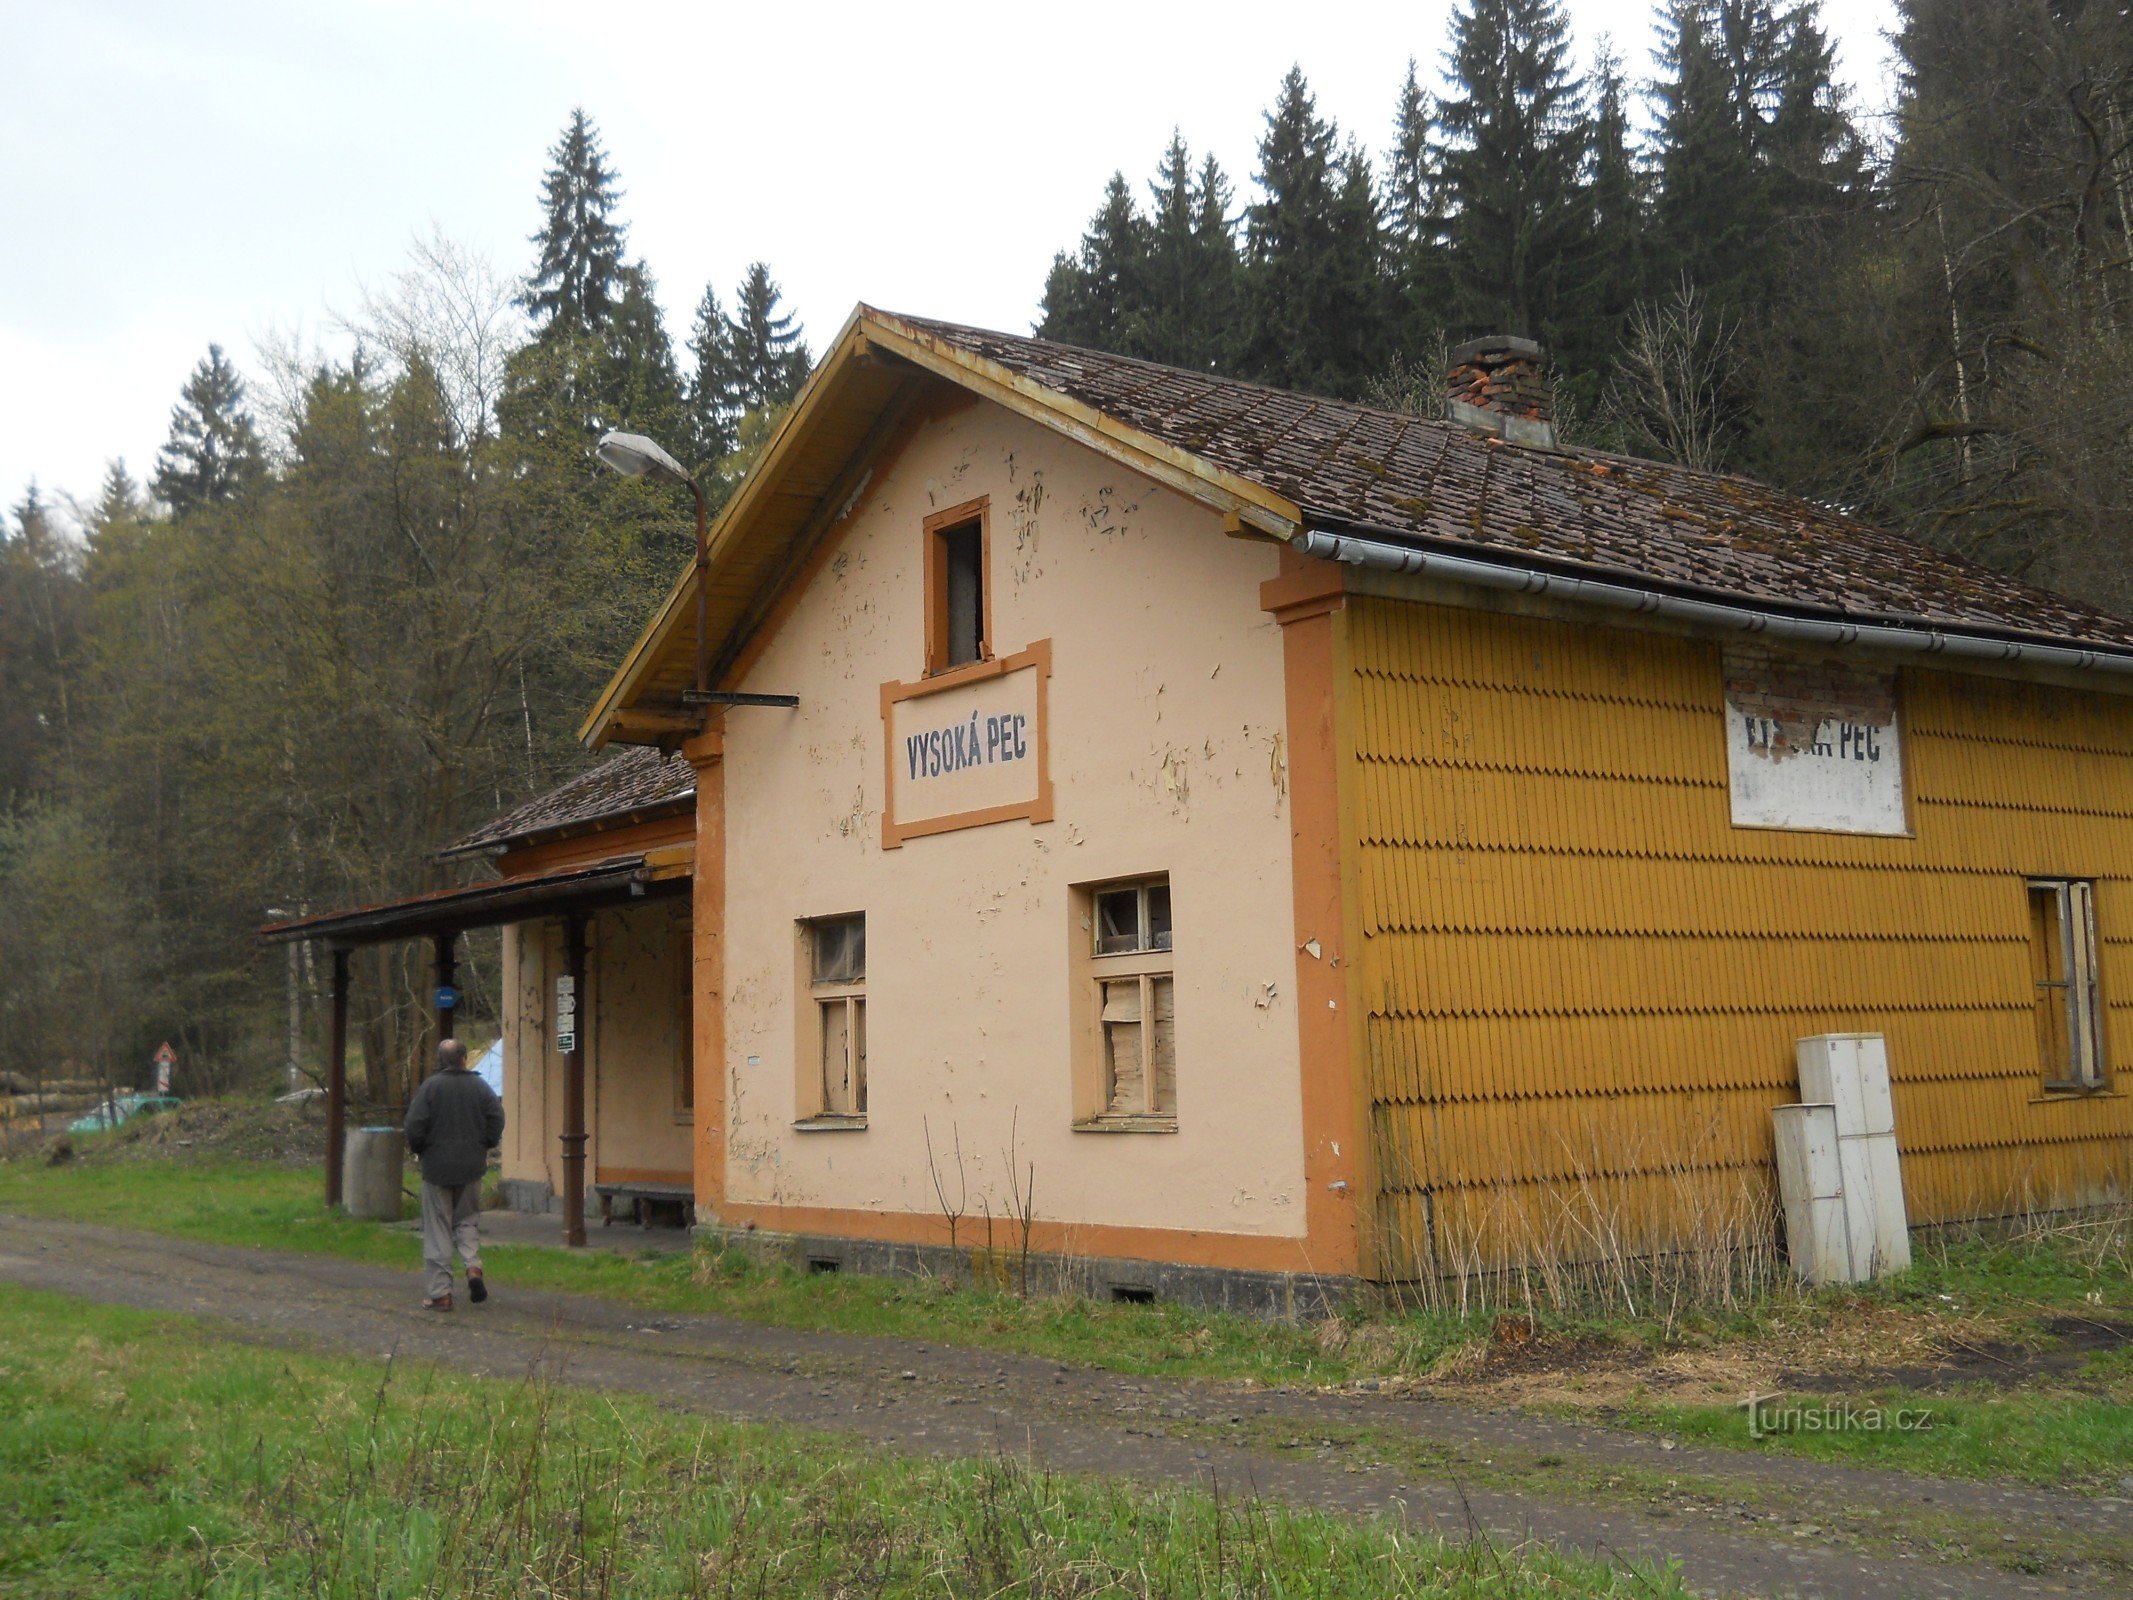 Stacja Vysoká Pec